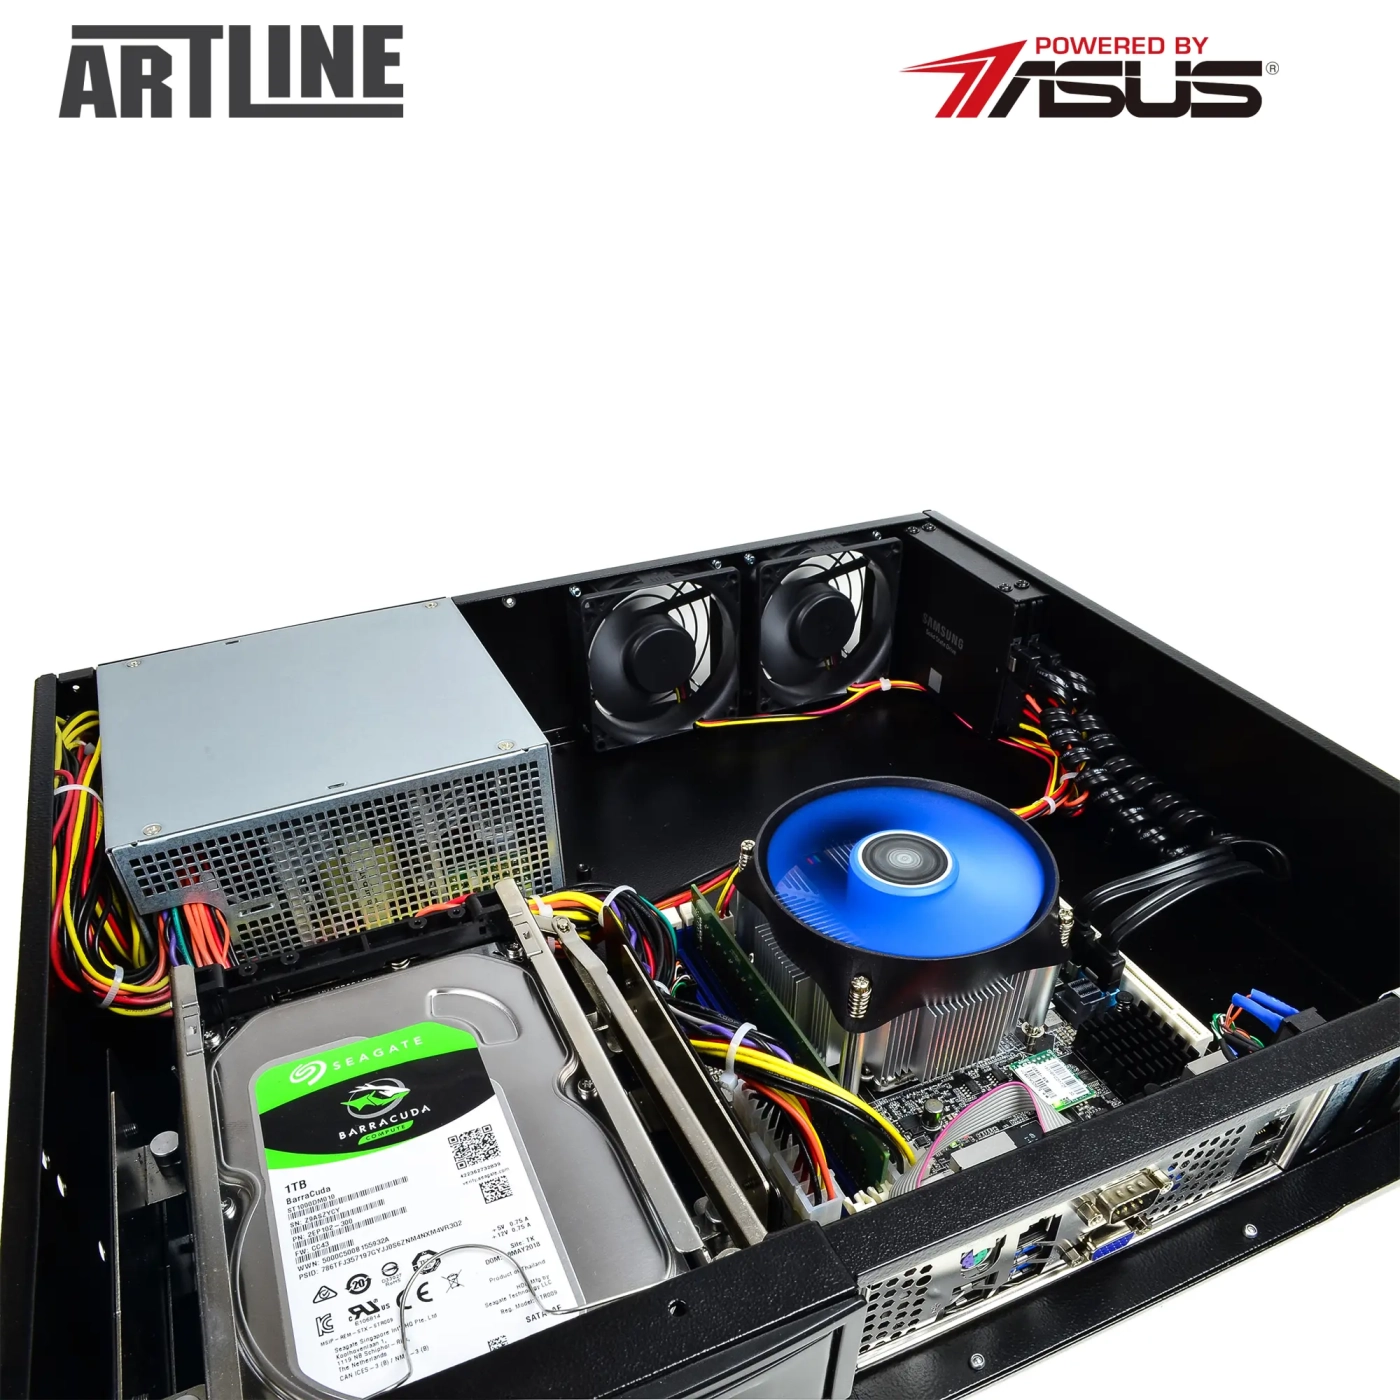 Купить Сервер ARTLINE Business R37 (R37v78) - фото 10